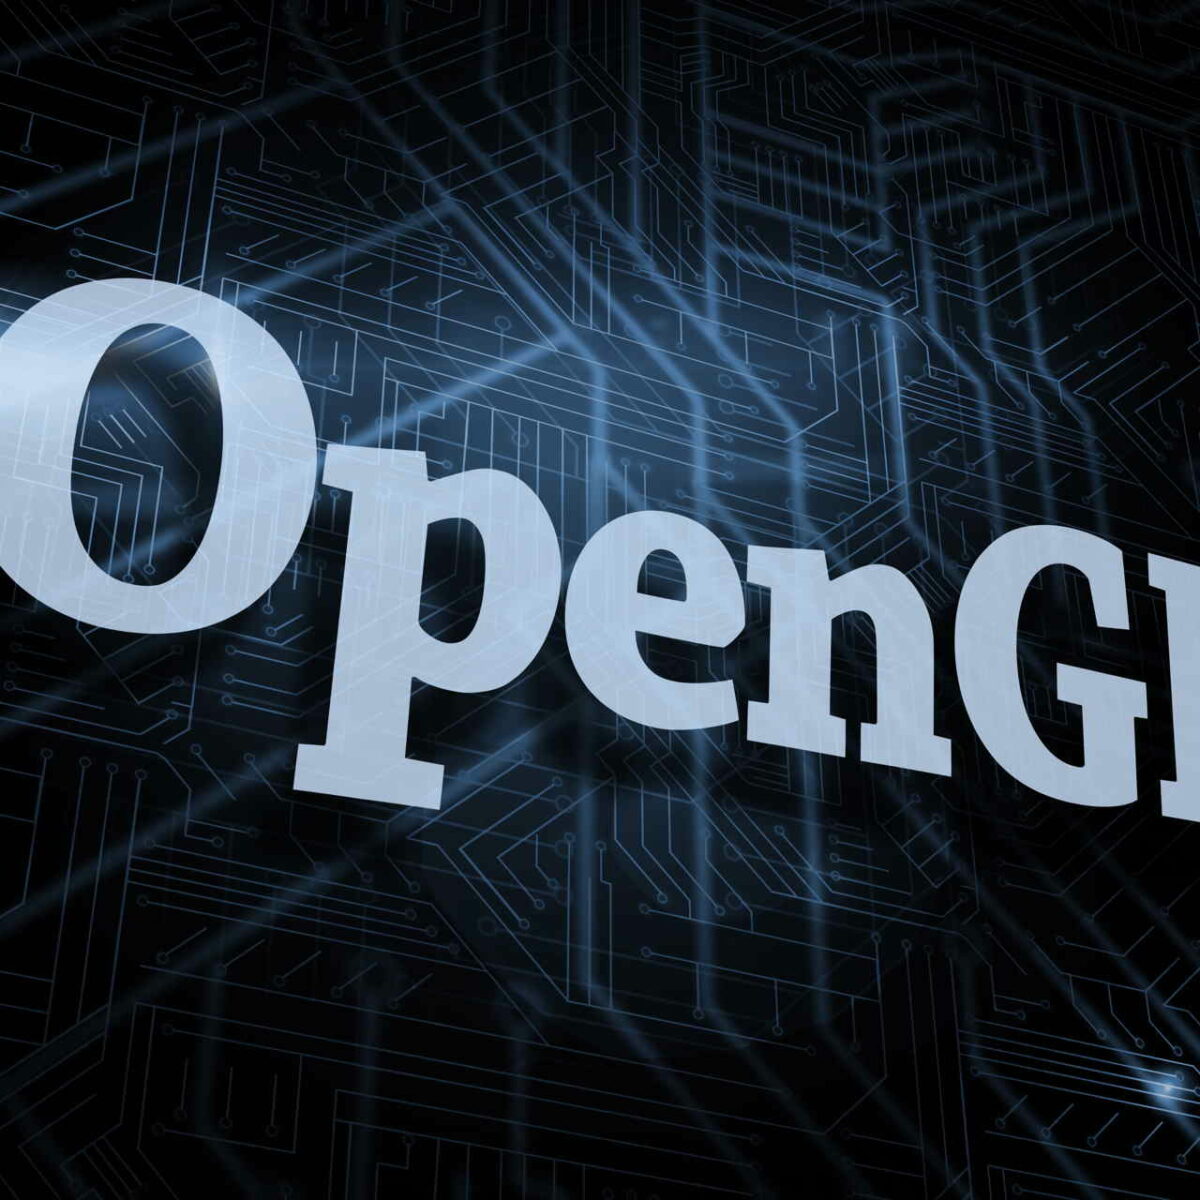 opengl 3.3 download windows 8.1